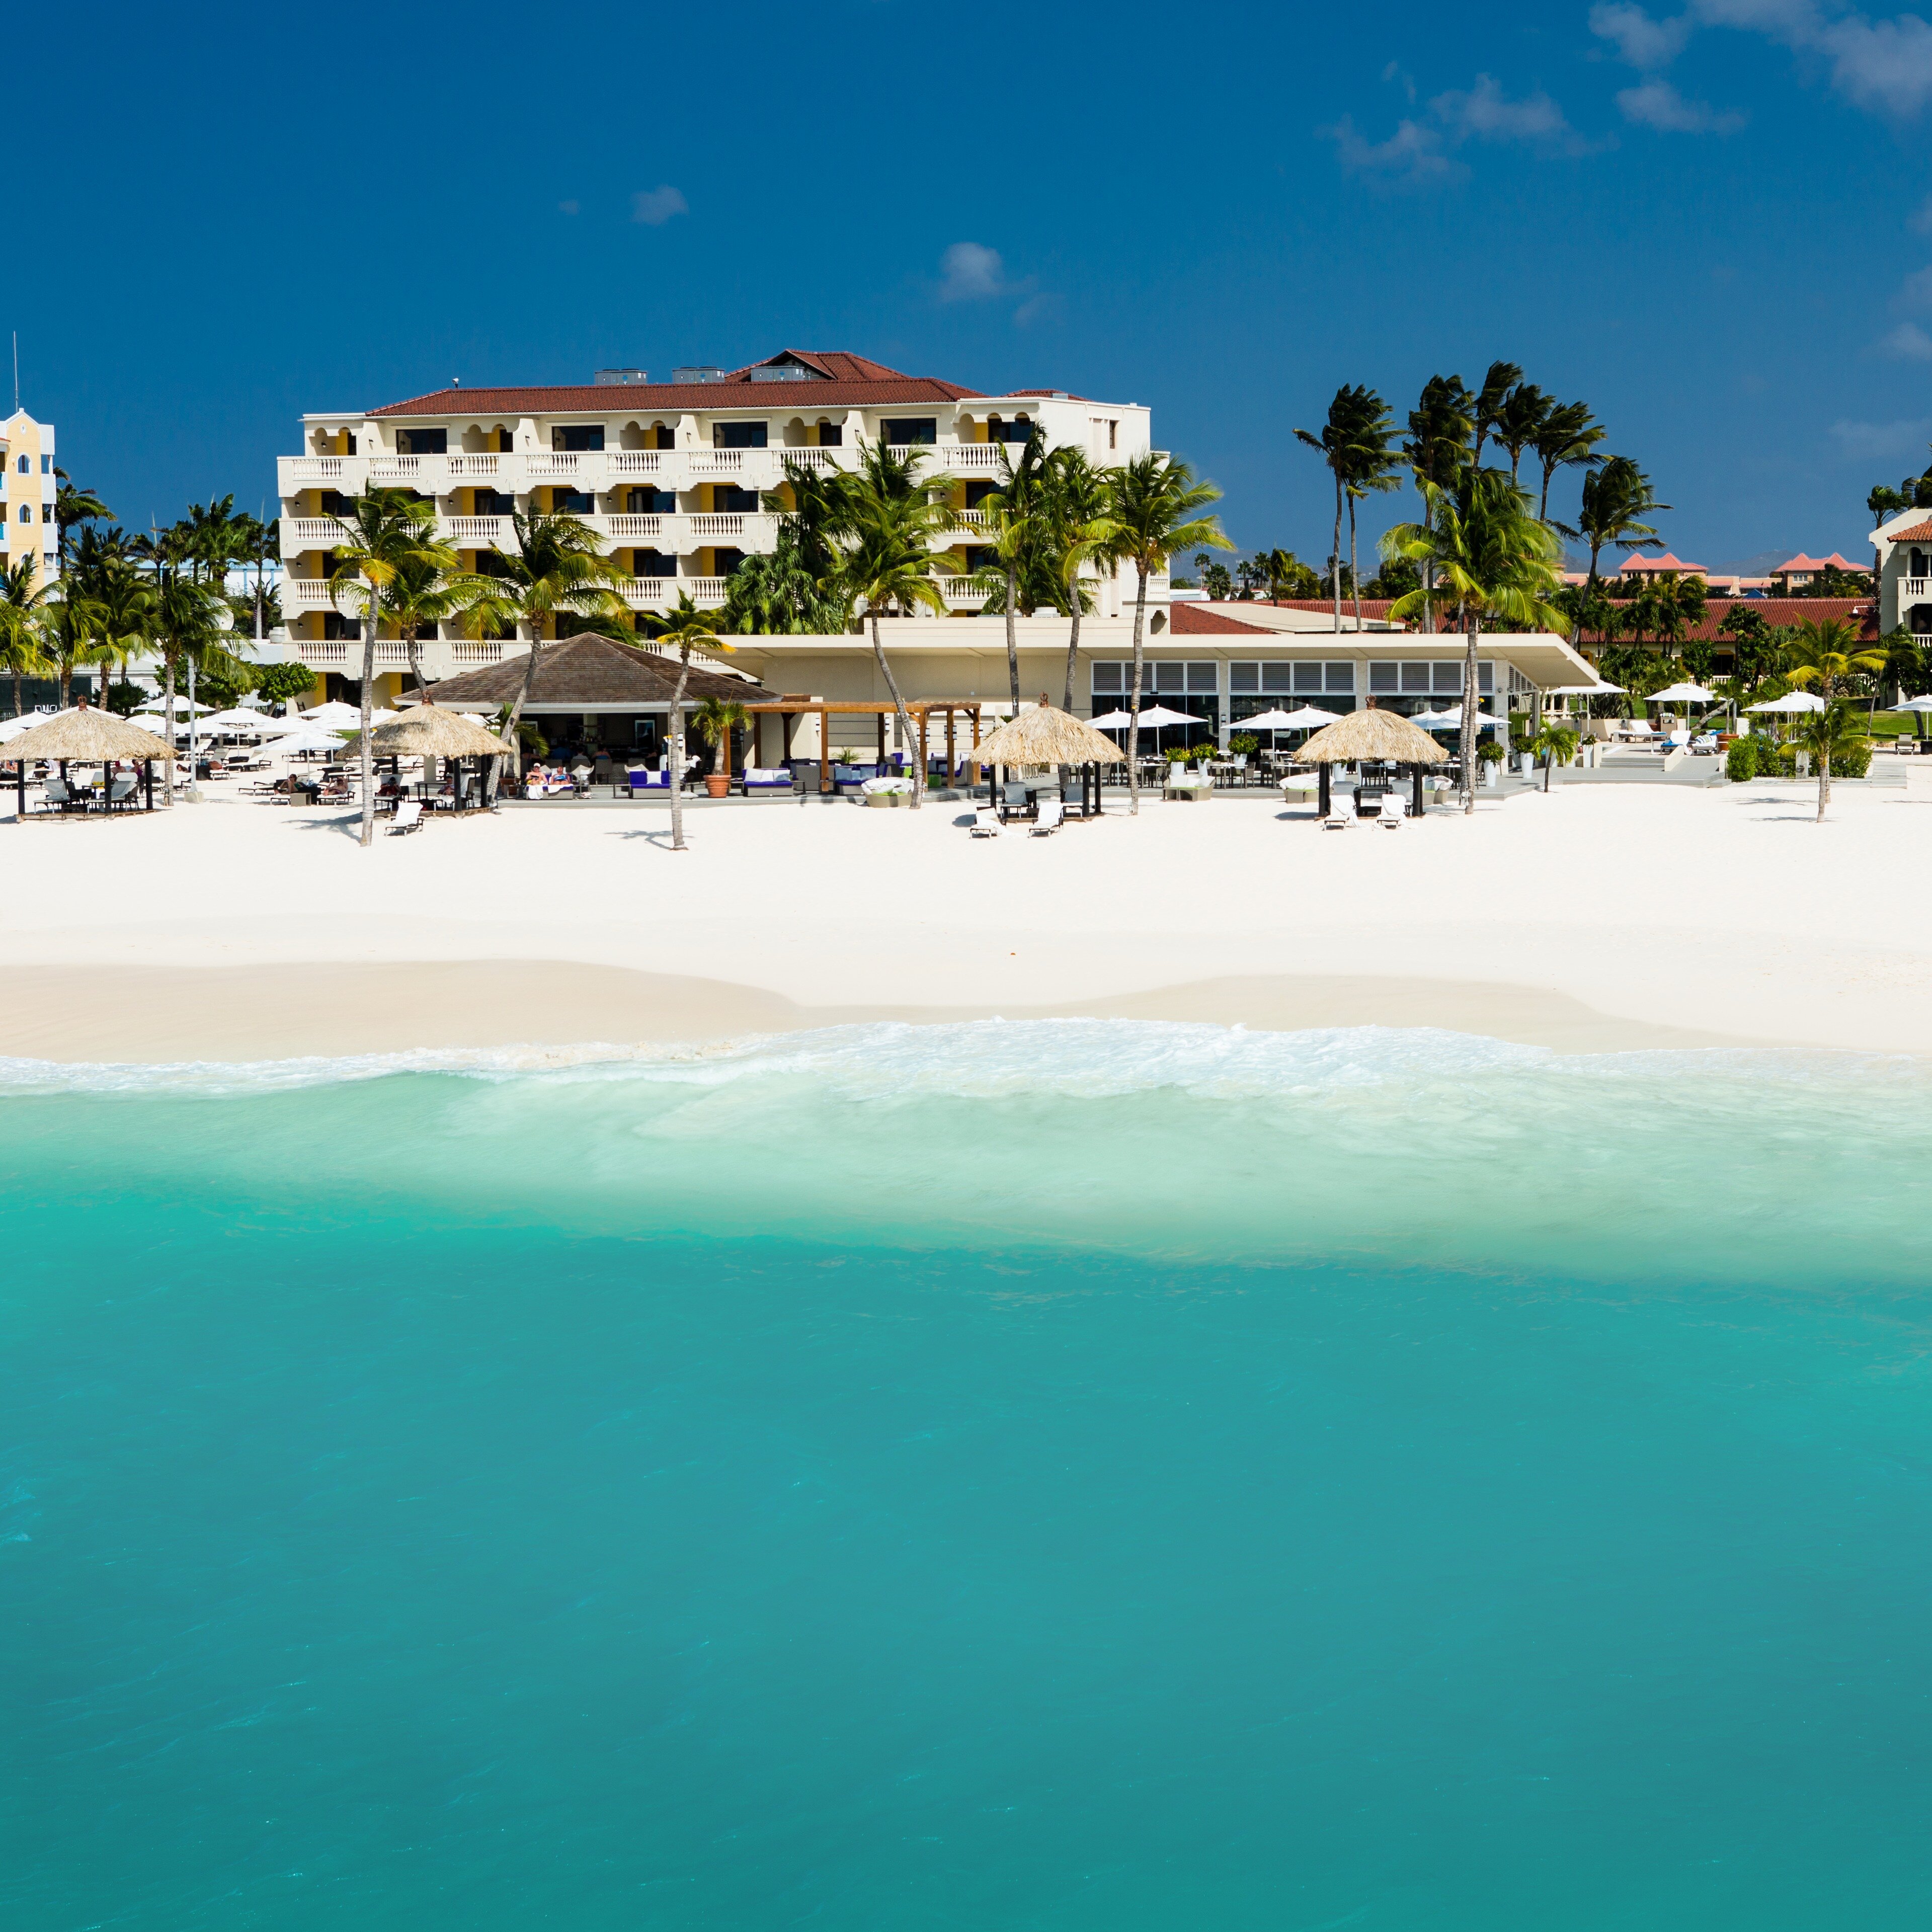 Bucuti & Tara Beach Resort Named Caribbean’s First Certified CarbonNeutral® Resort